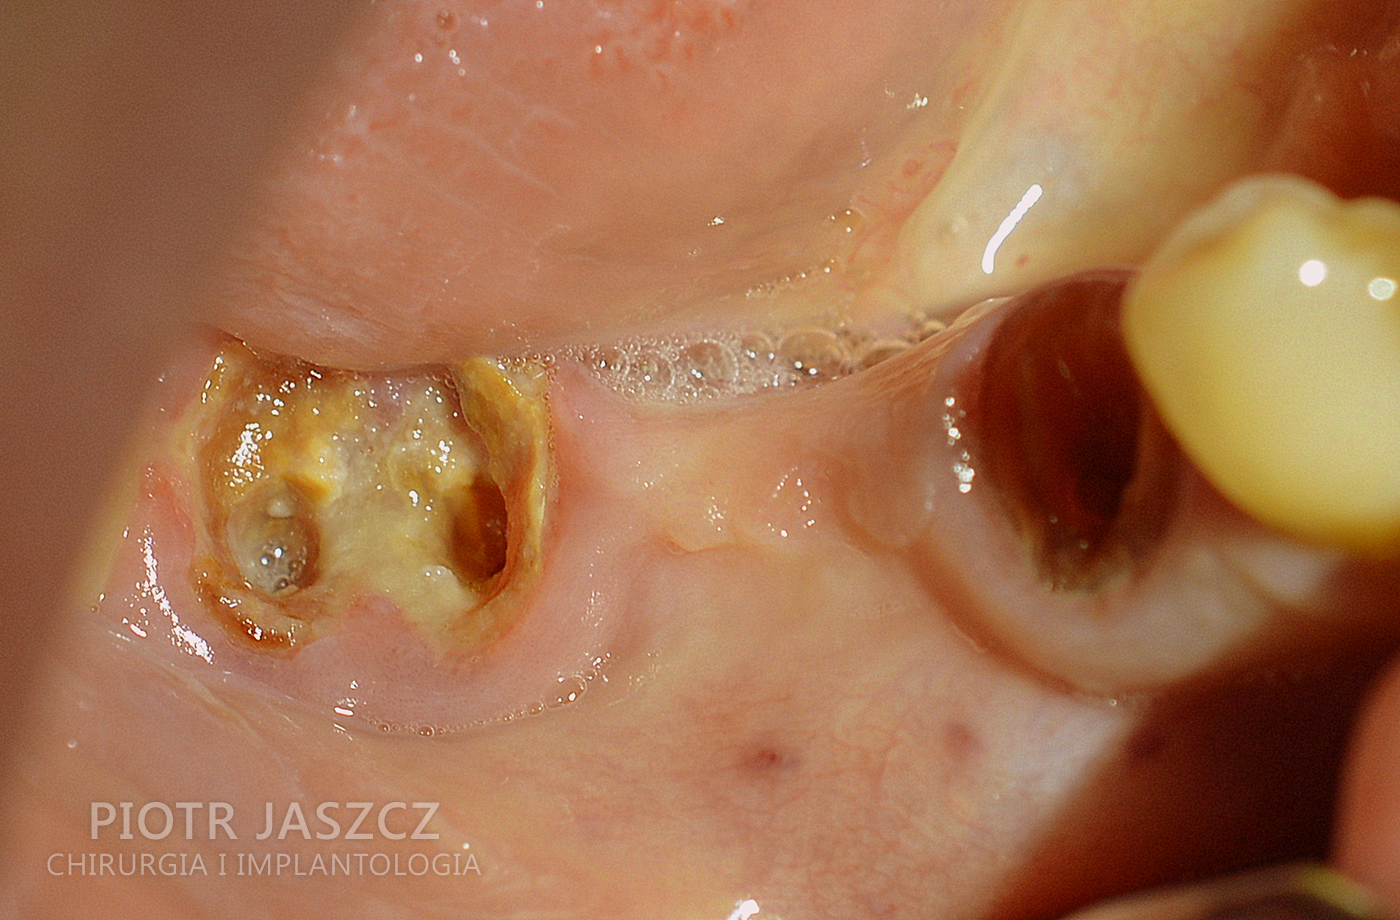 Usunięcie dwóch korzeni zębów dolnych z jednoczesnym wszczepieniem dwóch implantów oraz regeneracją kości przy użyciu materiału kościozastępczego oraz kości autogennej. Widoczny most ostateczny na dwóch implantach odtwarzający 3 zęby w żuchwie.